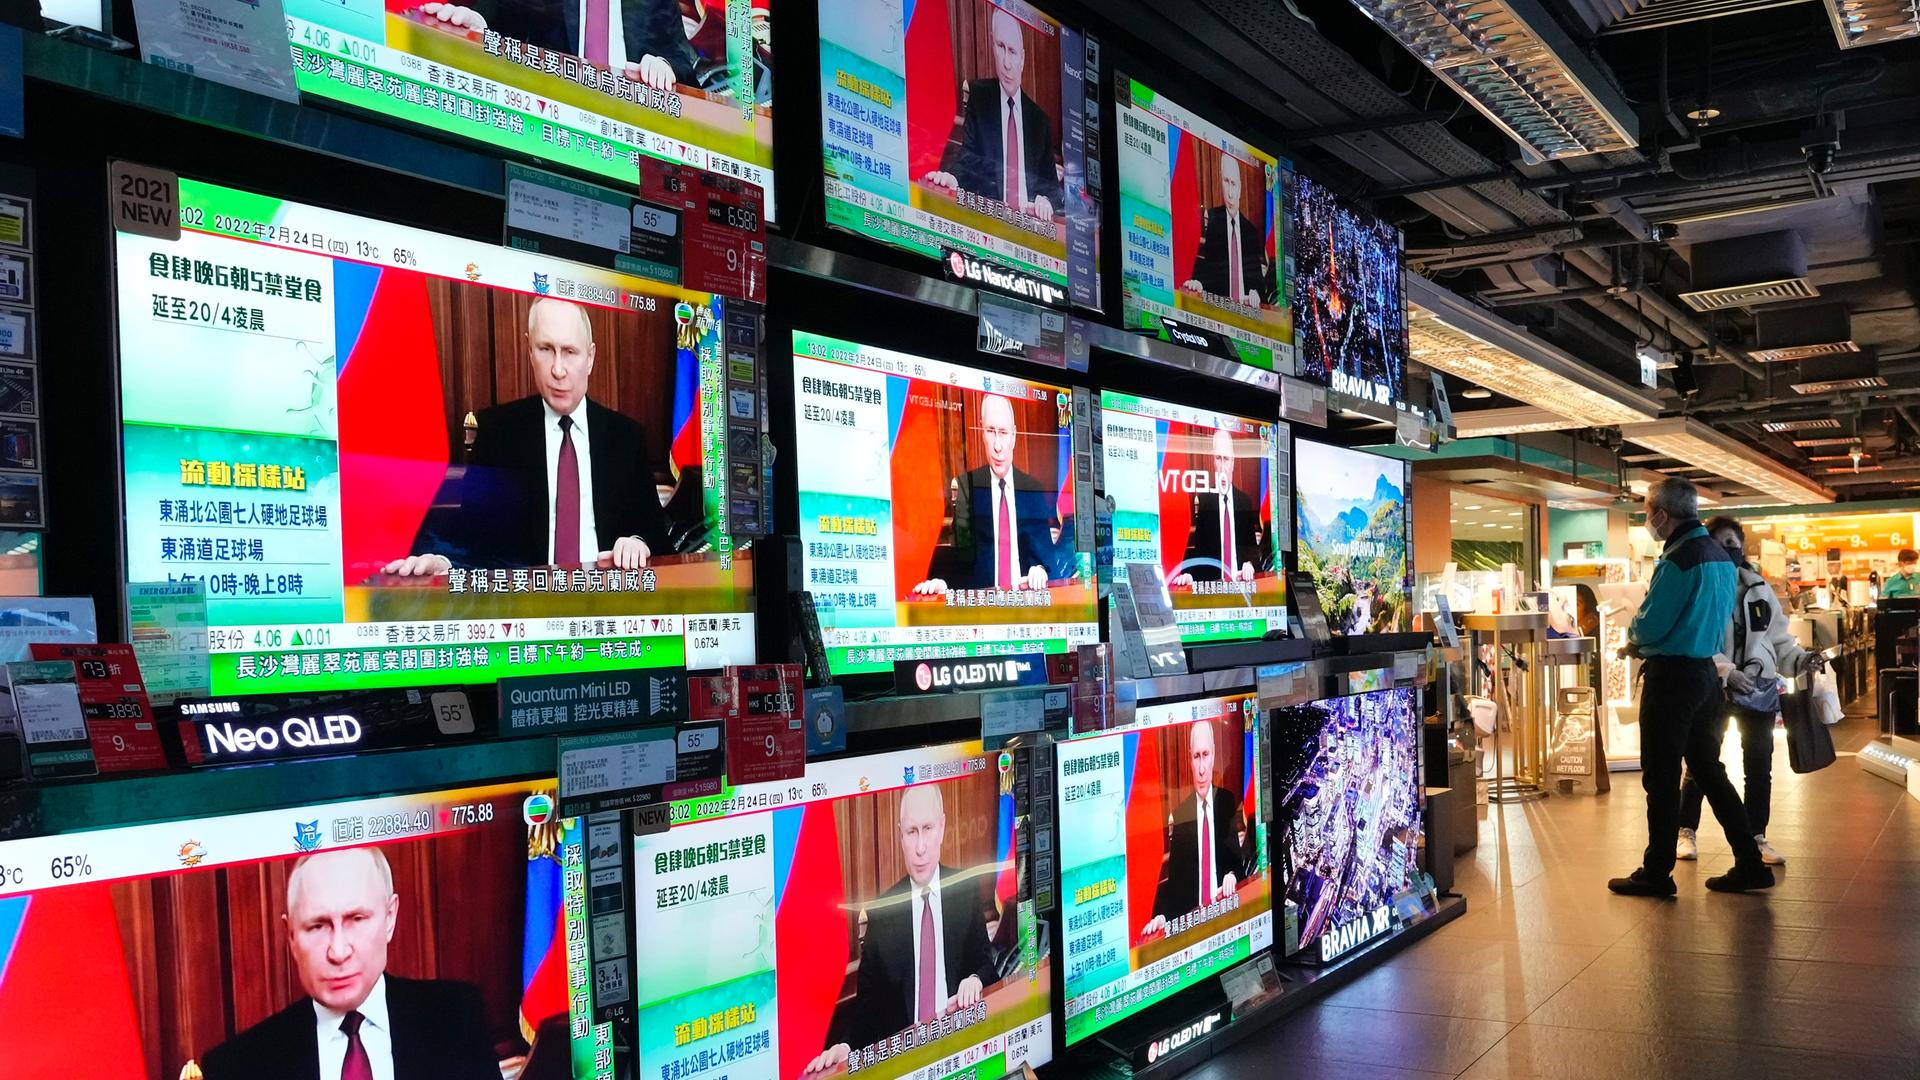 Menschen in Hongkong schauen auf mehrere Fernsehbildschirme, auf denen Putin zu sehen ist.